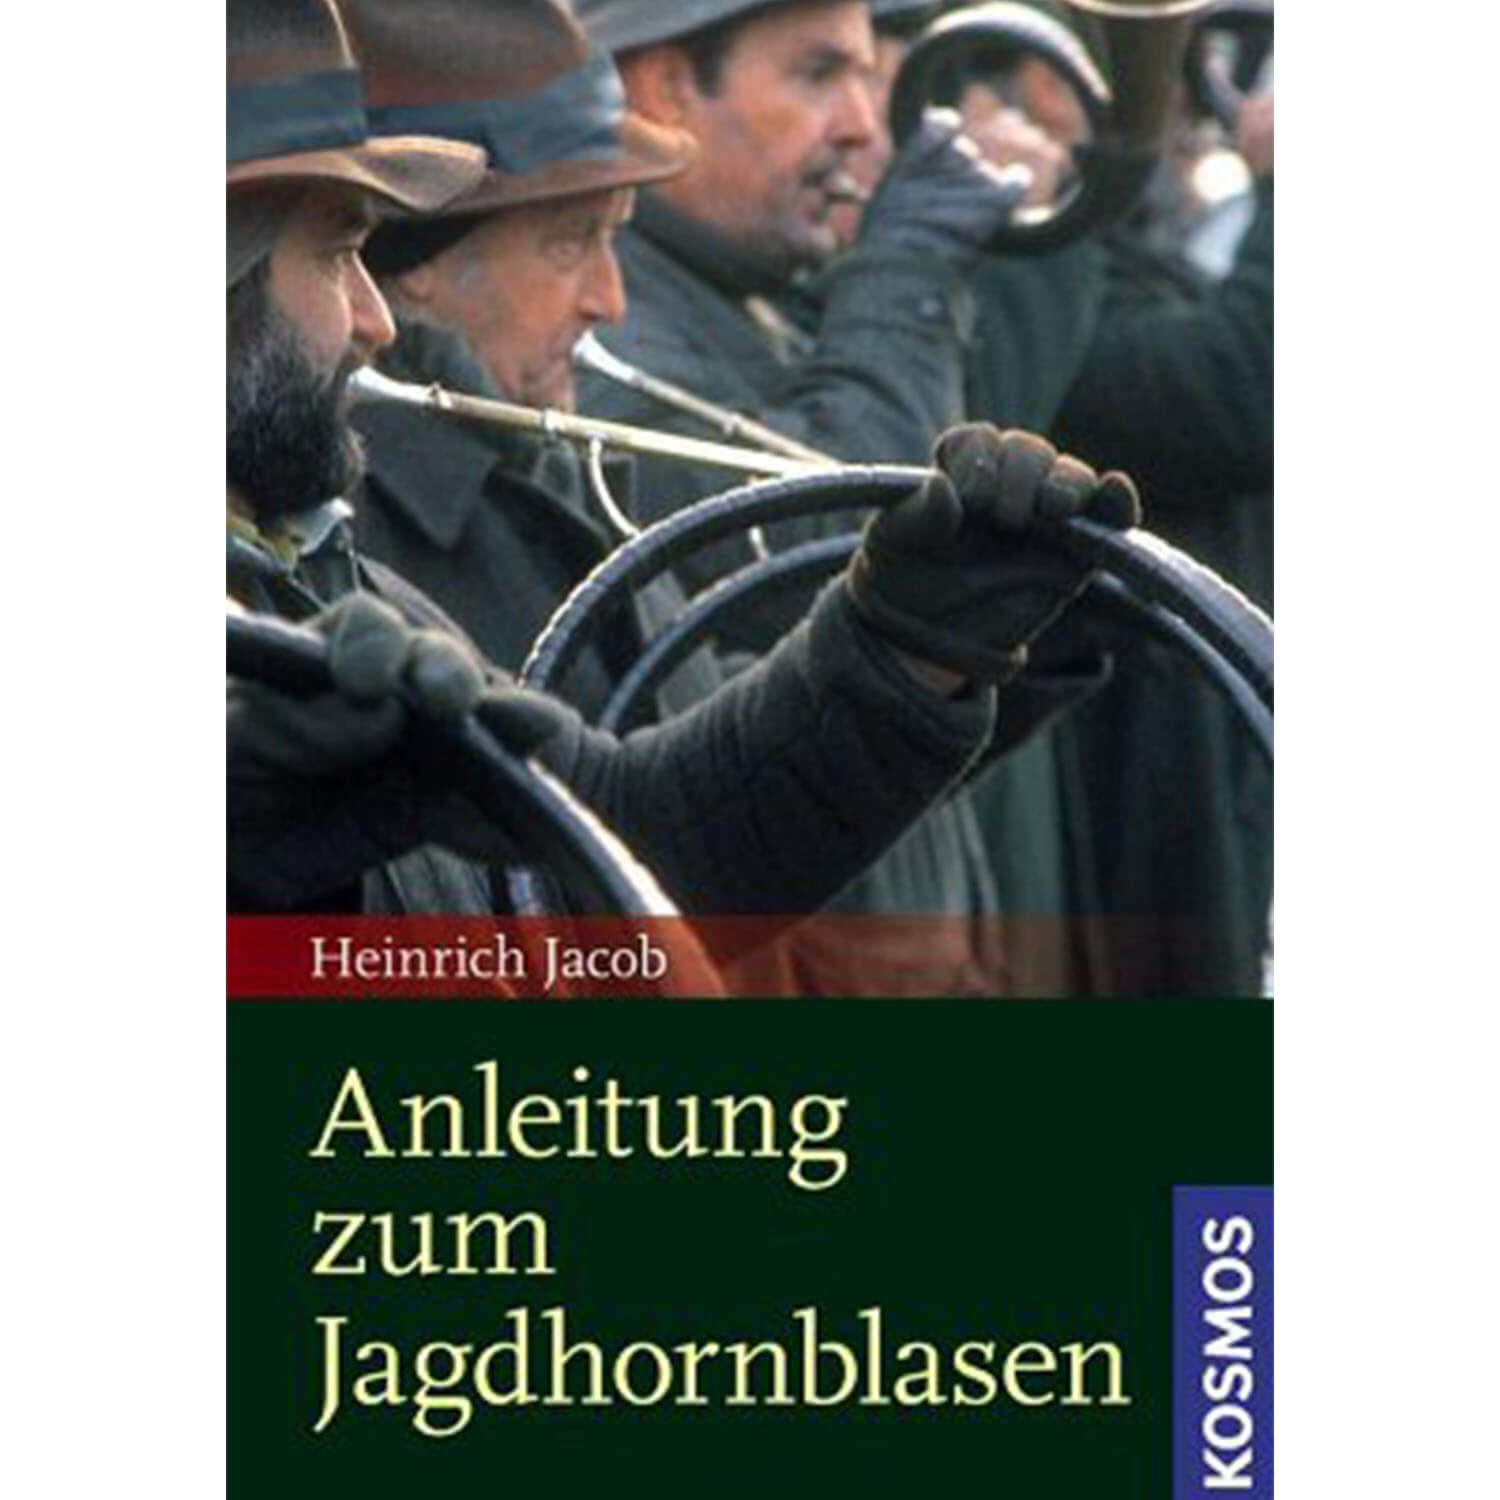 Anleitung zum Jagdhornblasen - Buch - Heinrich Jacob - Jagdbücher